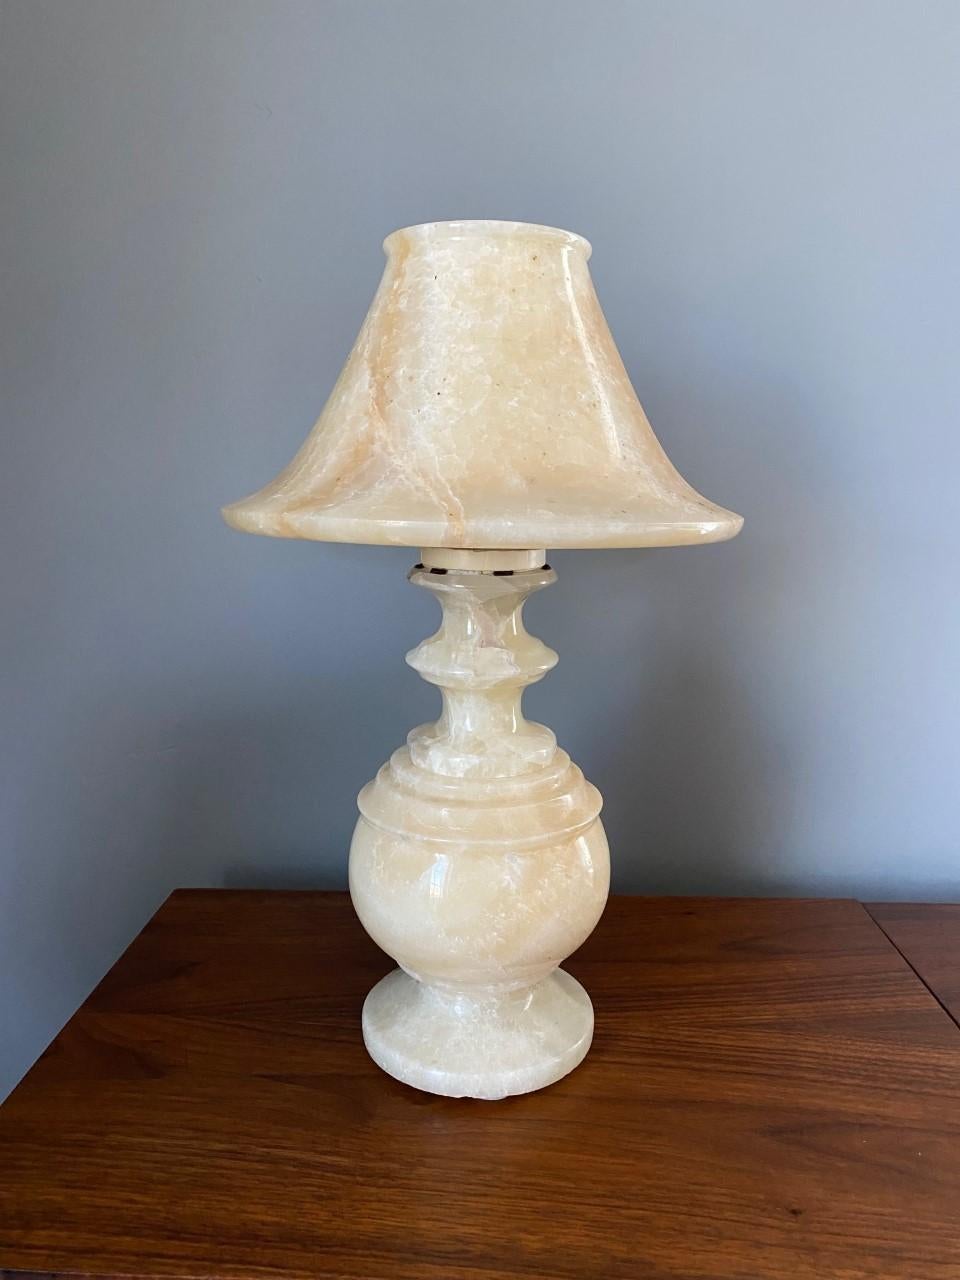 Wunderschön geschnitzte Alabastermarmorlampe, die auffällig und schön ist. Diese Lampe besteht aus einem Marmorkörper und einem Marmorschirm, die zusammen nicht nur als Lampe, sondern auch als Skulptur stehen. Die klassischen Formen auf dem